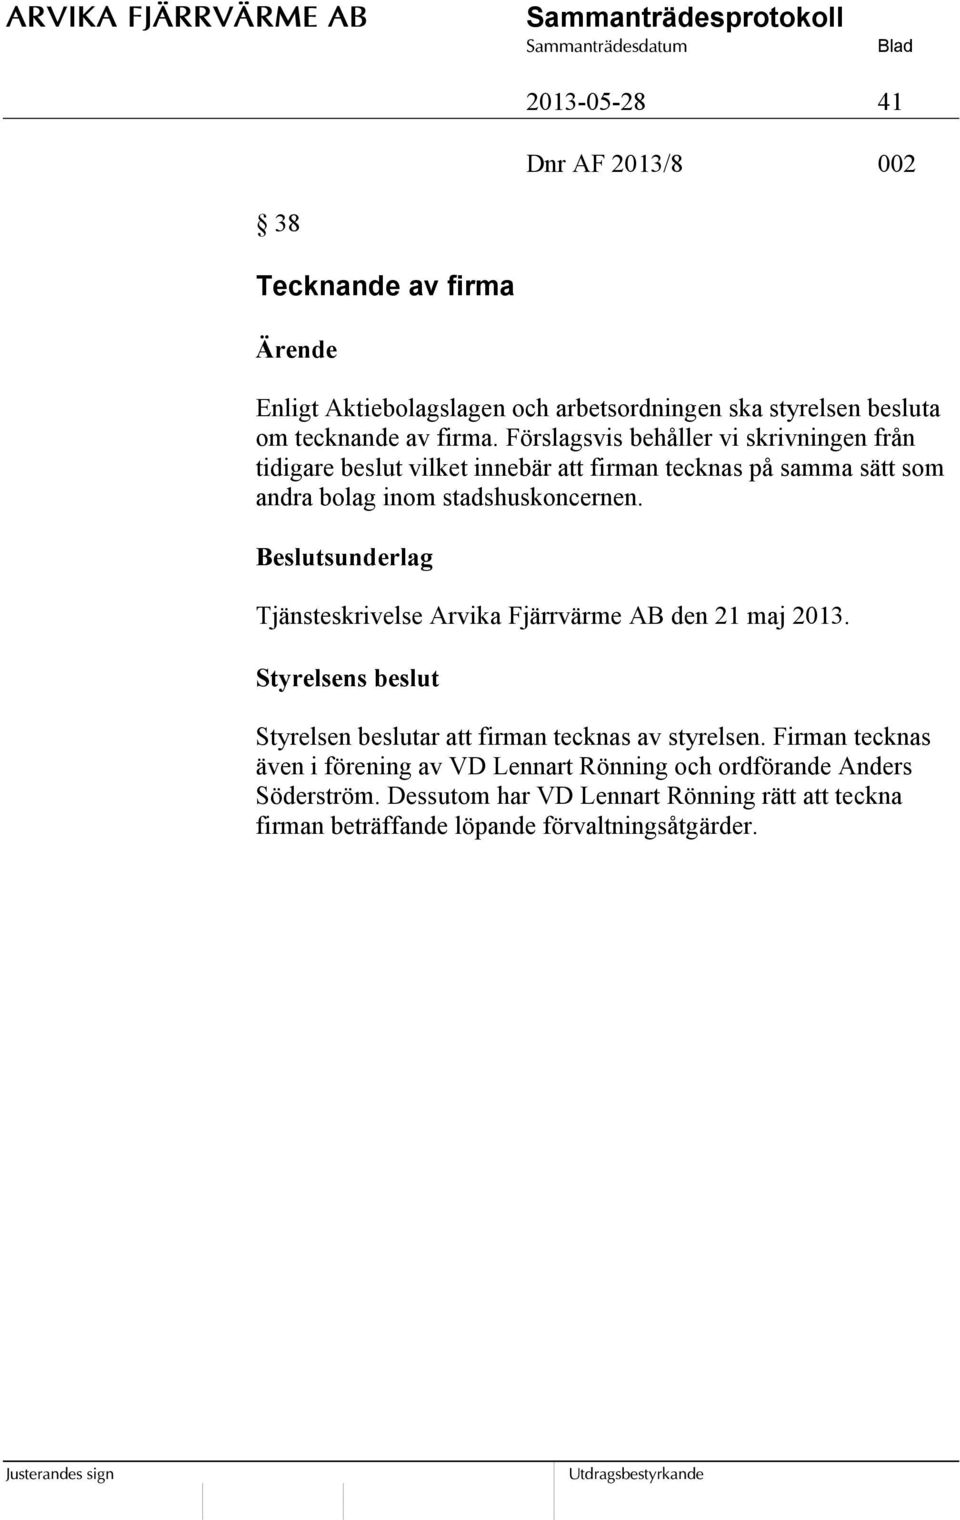 Beslutsunderlag Tjänsteskrivelse Arvika Fjärrvärme AB den 21 maj 2013. Styrelsen beslutar att firman tecknas av styrelsen.